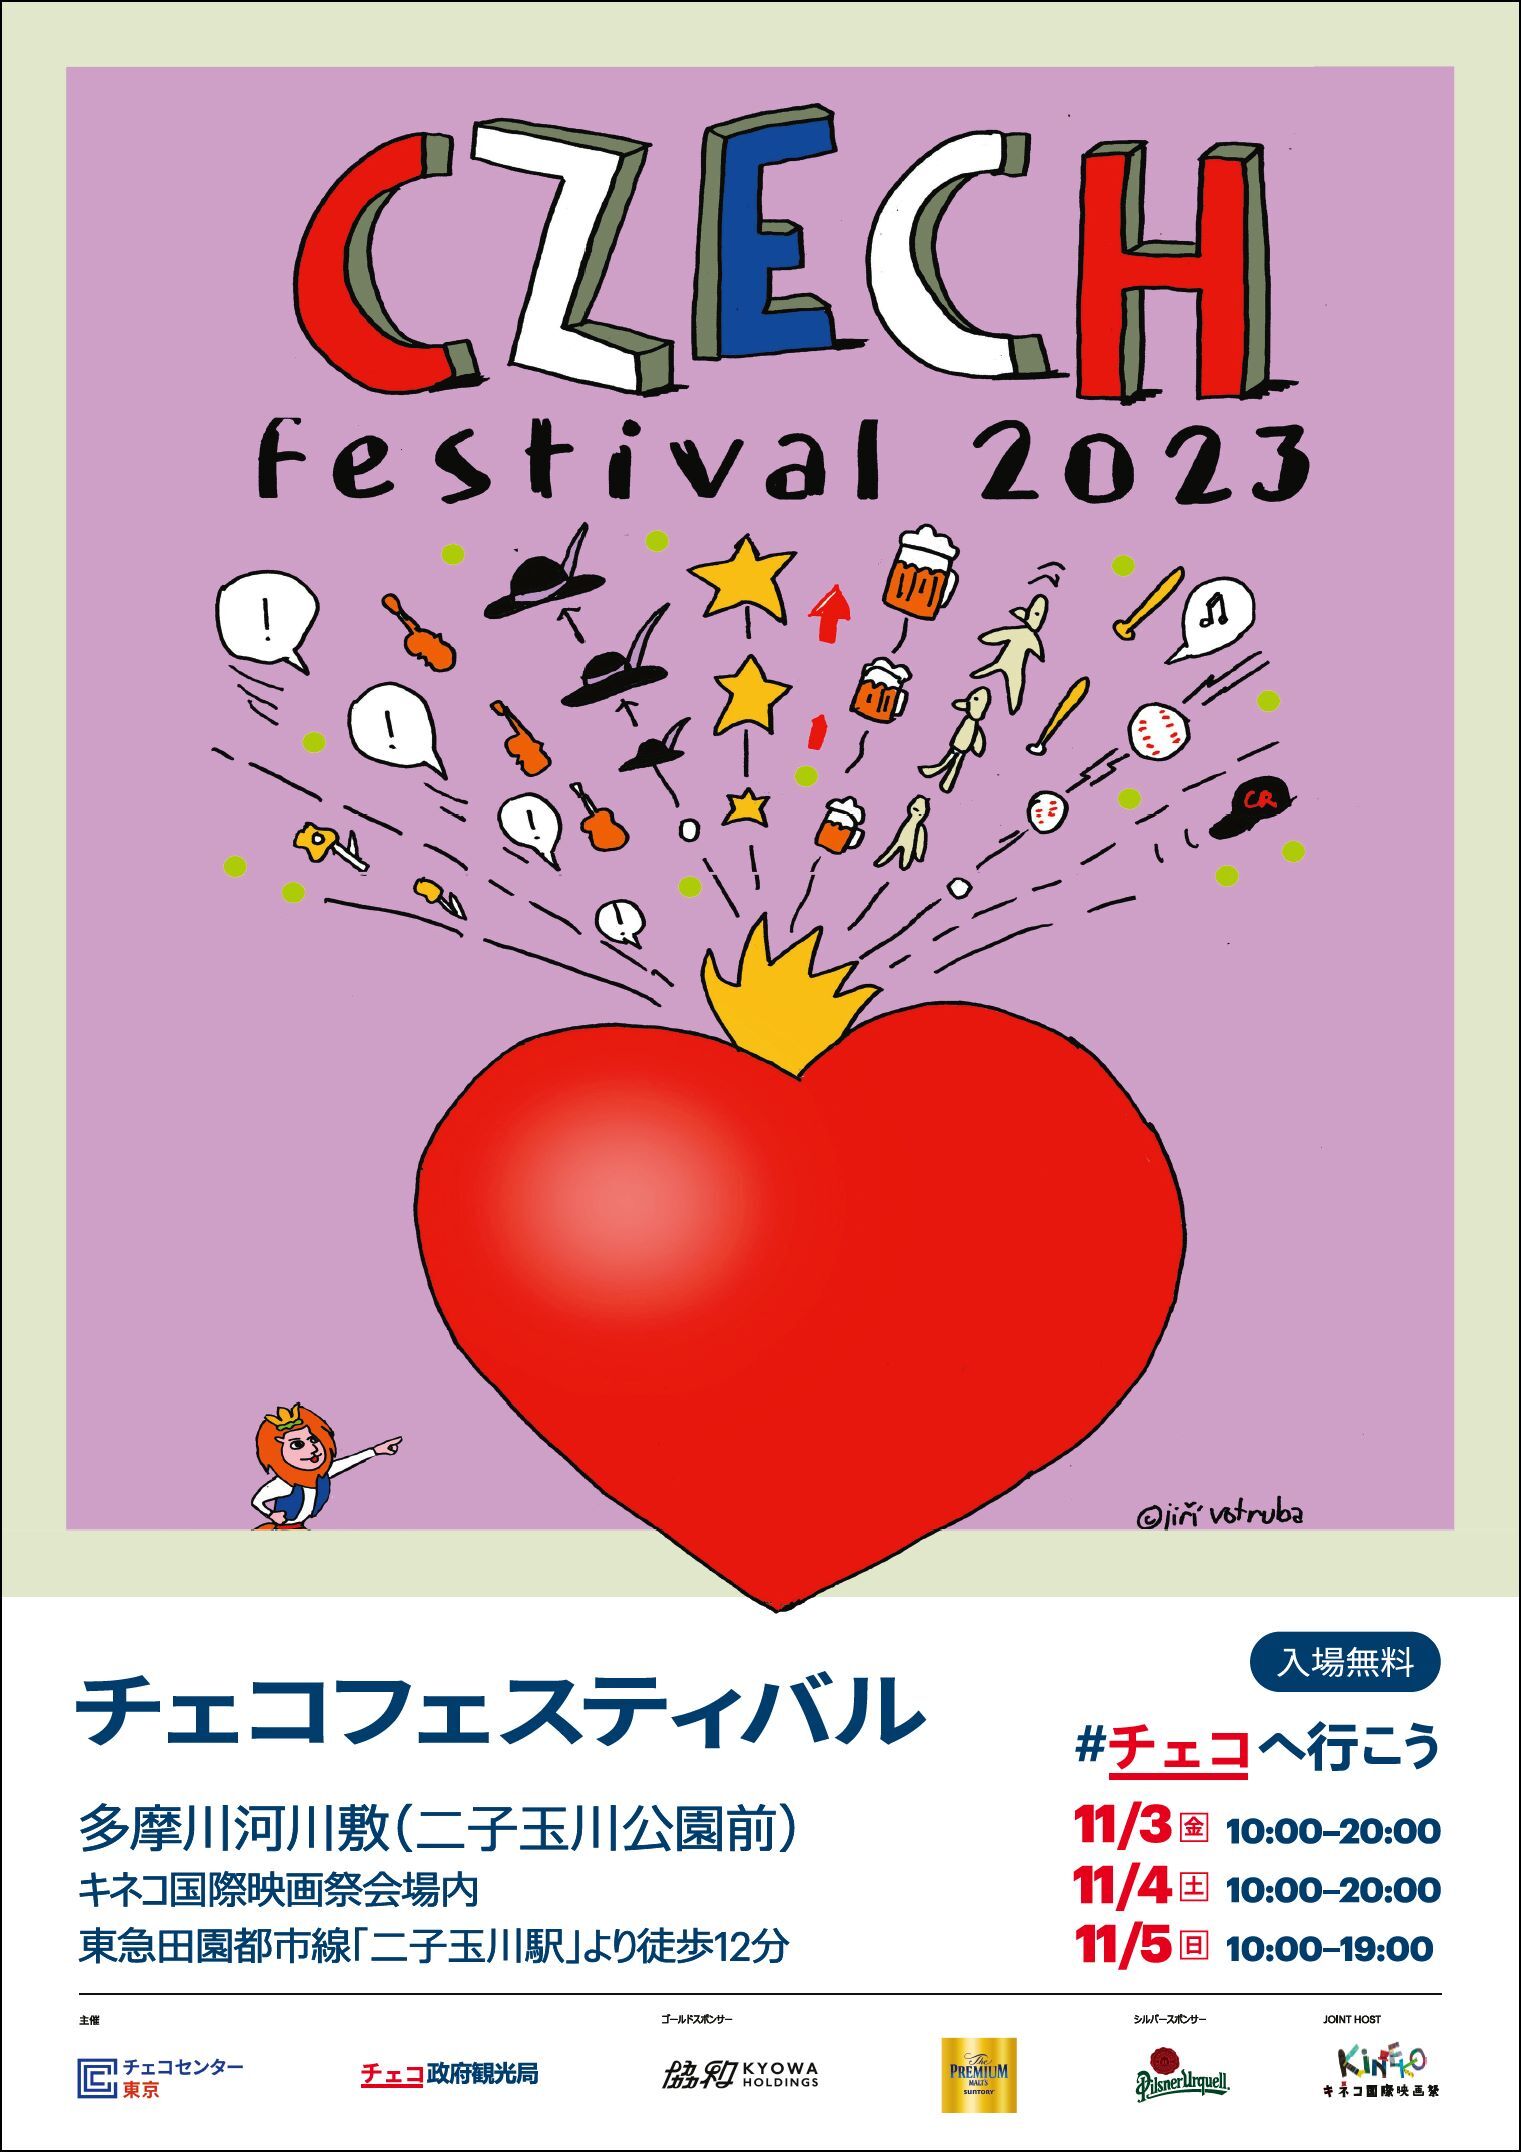 8回目となる「チェコフェスティバル2023 in 東京」
第30回キネコ国際映画祭とコラボ！
2023年11月3日～11月5日二子玉川で開催